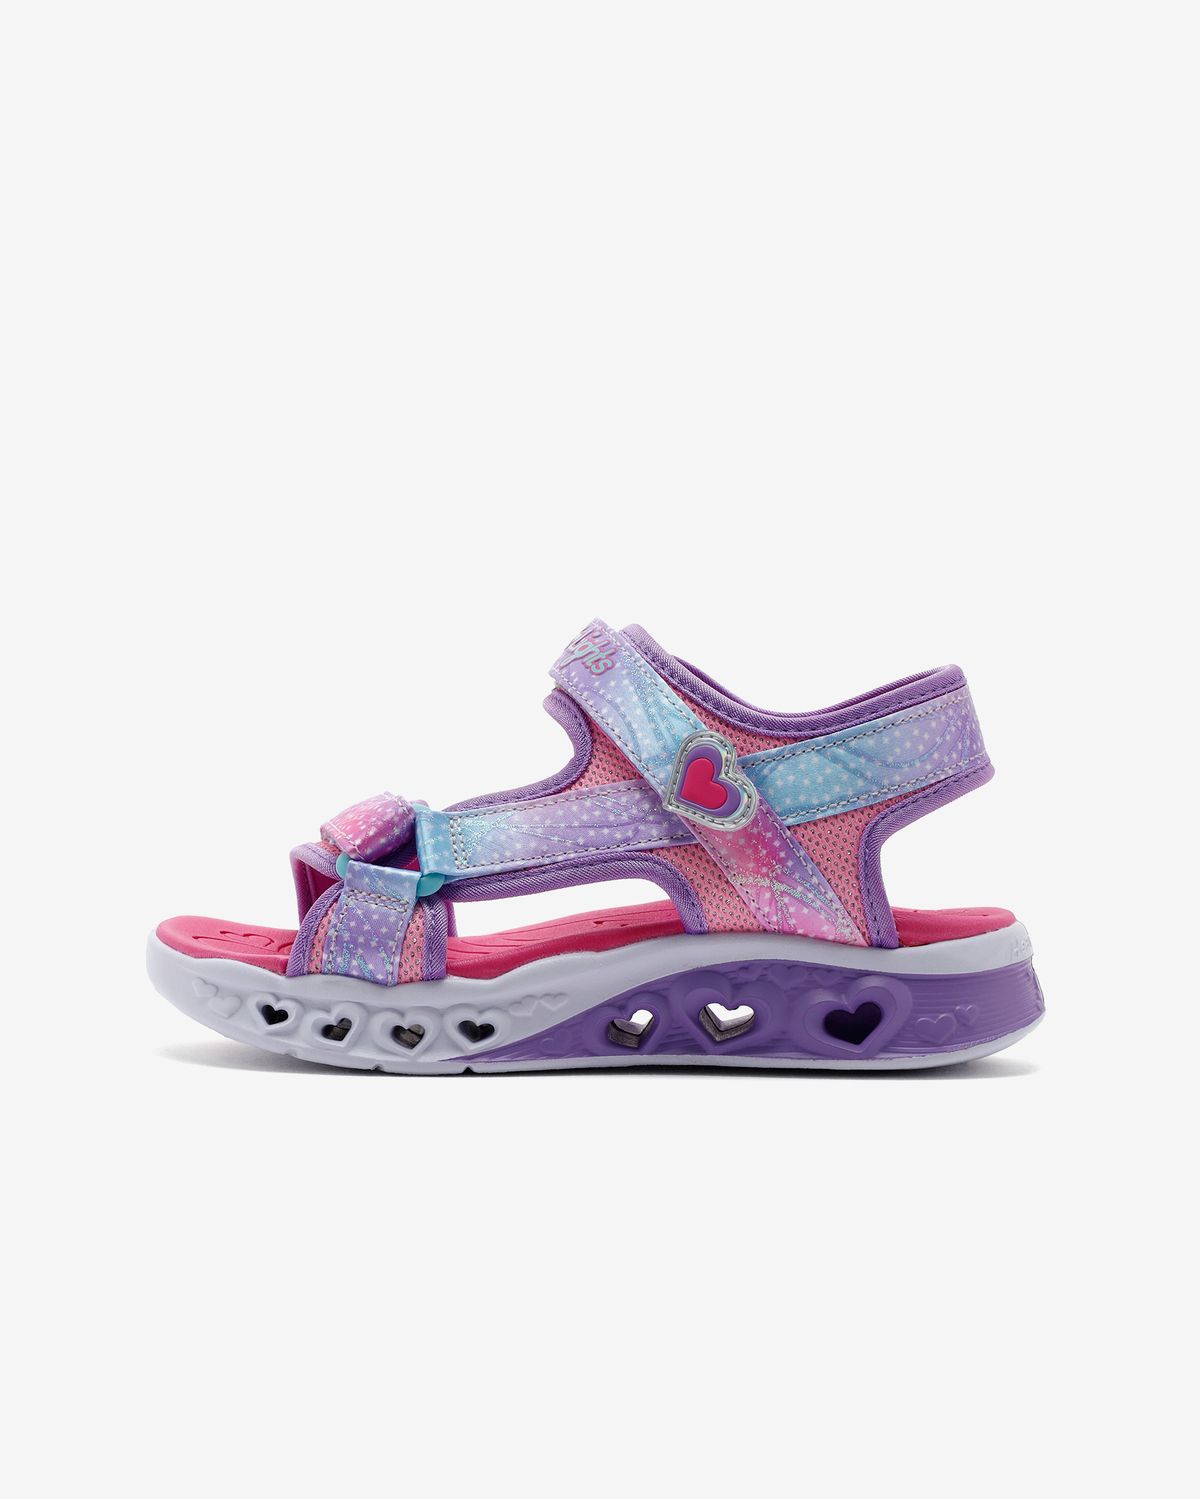 Skechers Flutter Hearts Sandal - Twili Büyük Kız Çocuk Pembe Sandalet 303105l Pkmt